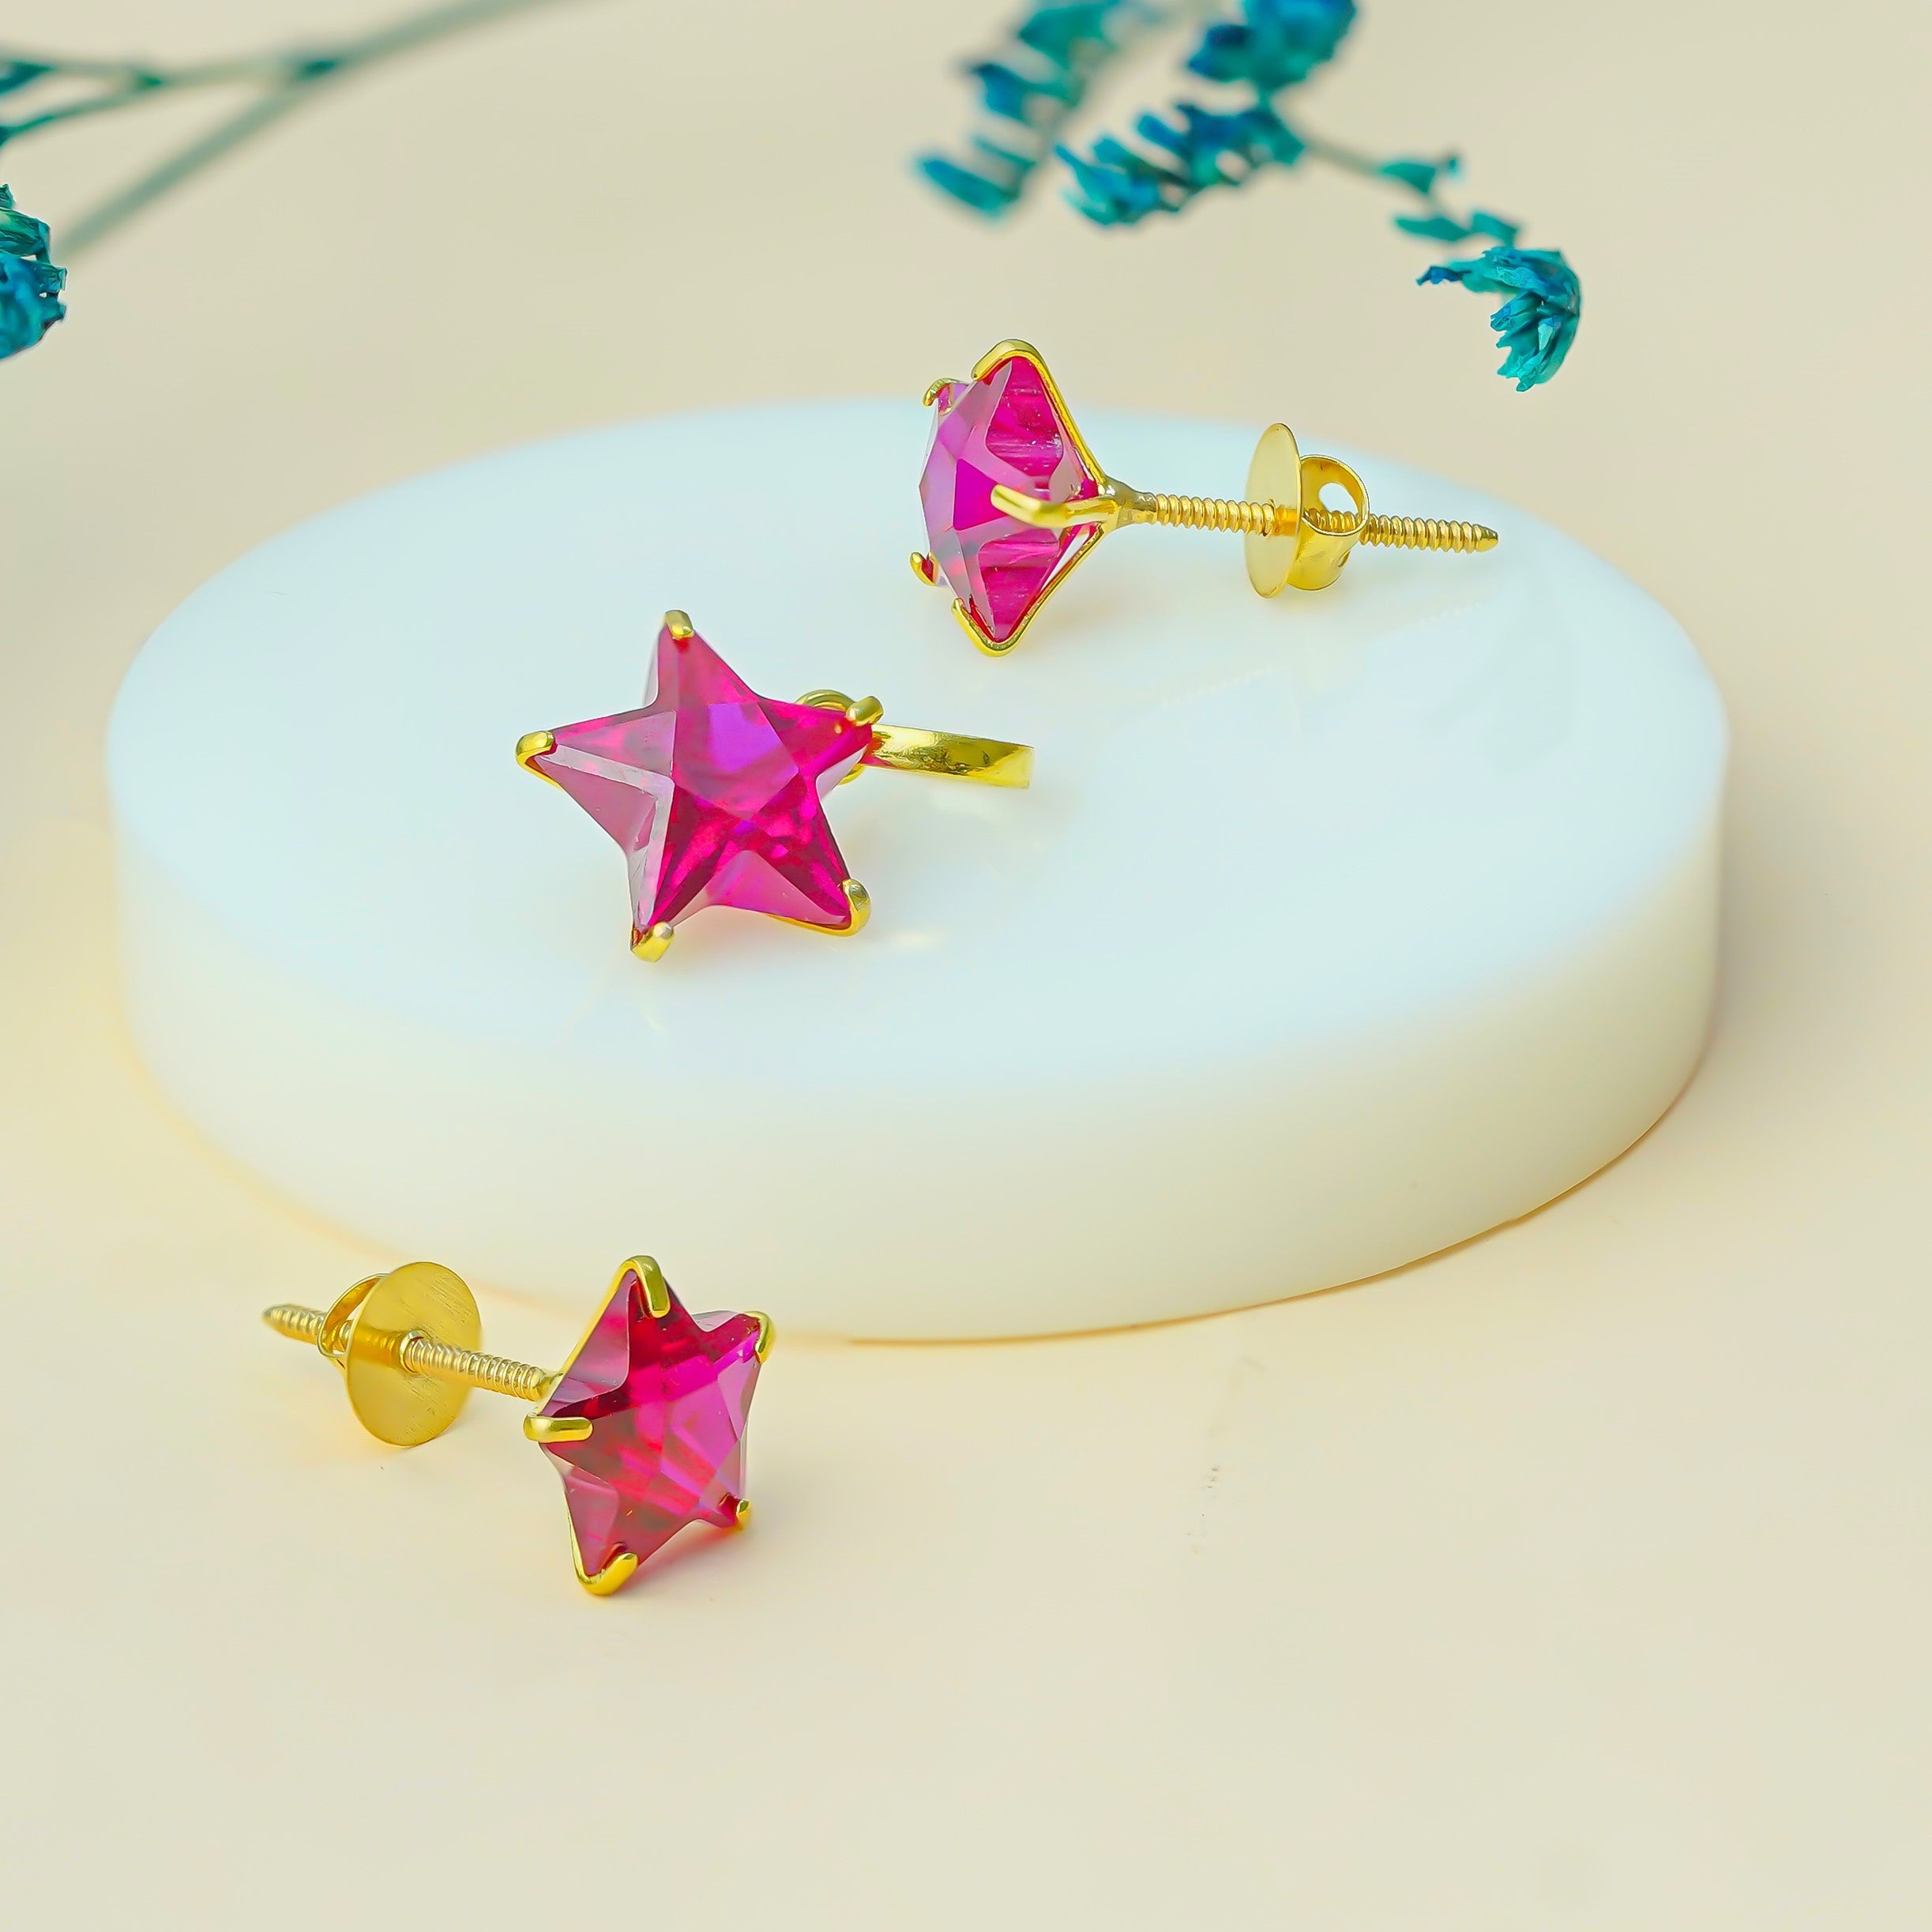 10 KT Gold Carmine Star Diamond Pendant & Earring Set